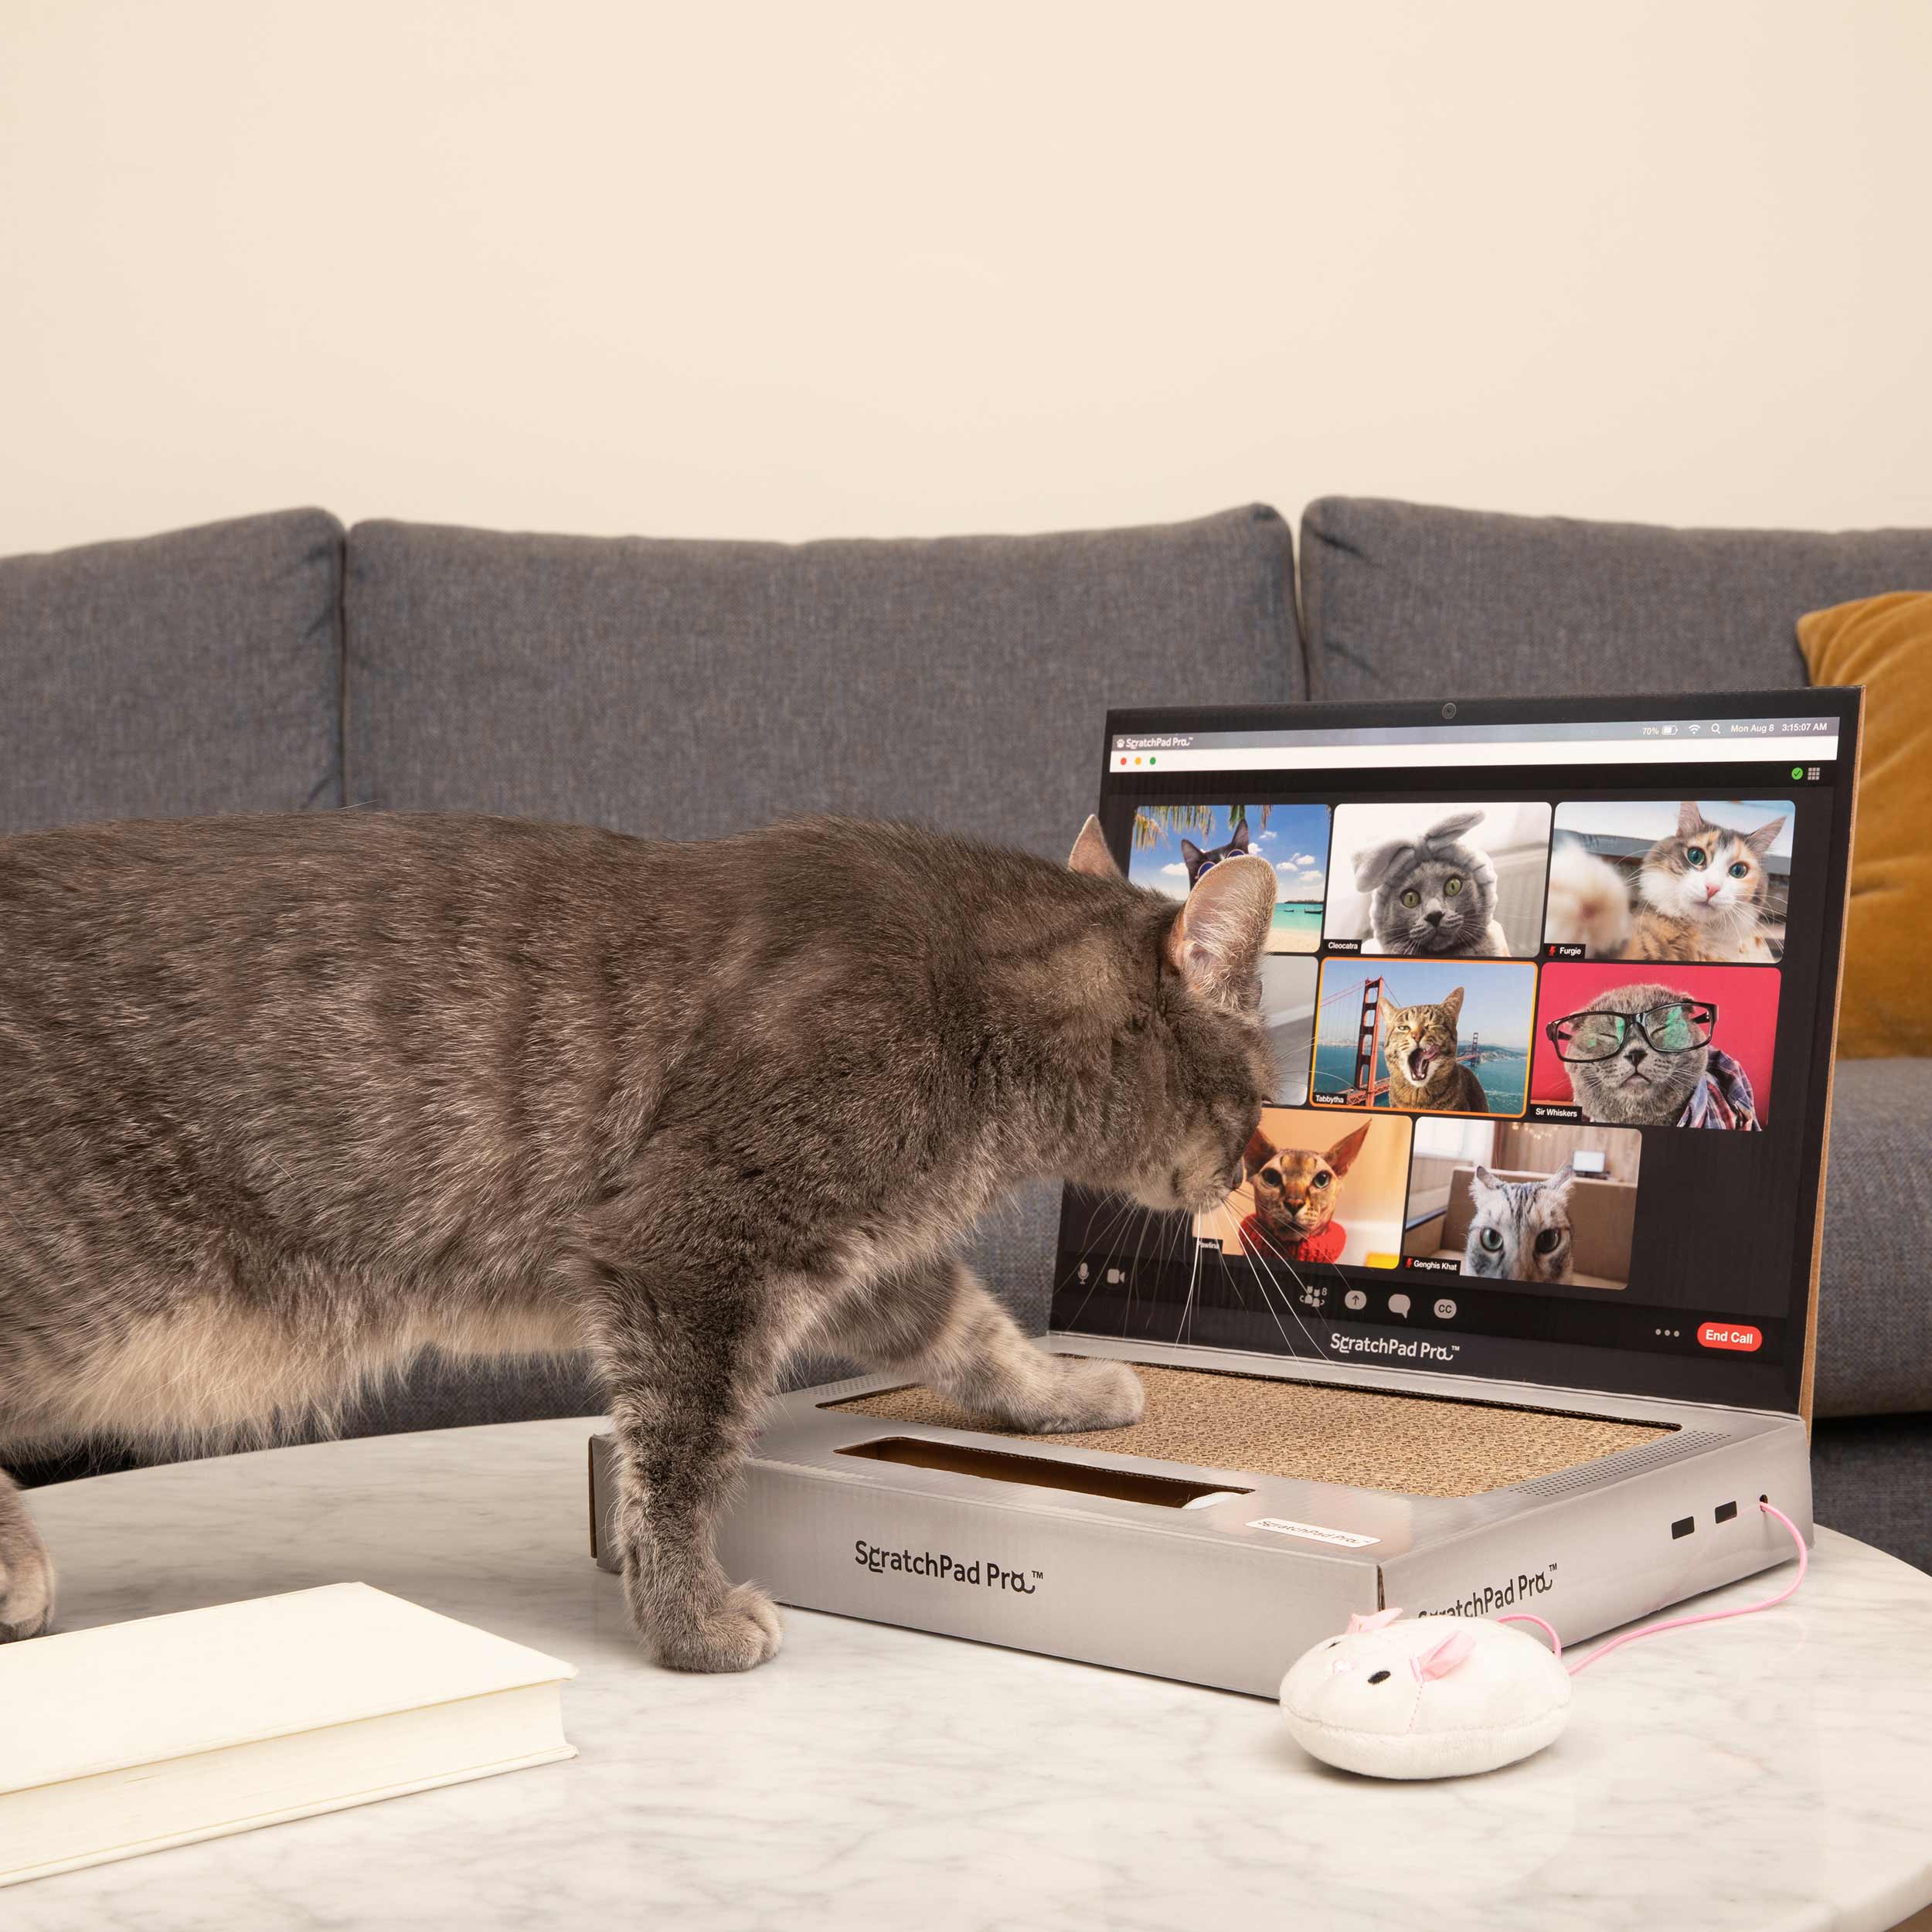 ScratchPad Pro — Cardboard Laptop Cat Scratcher